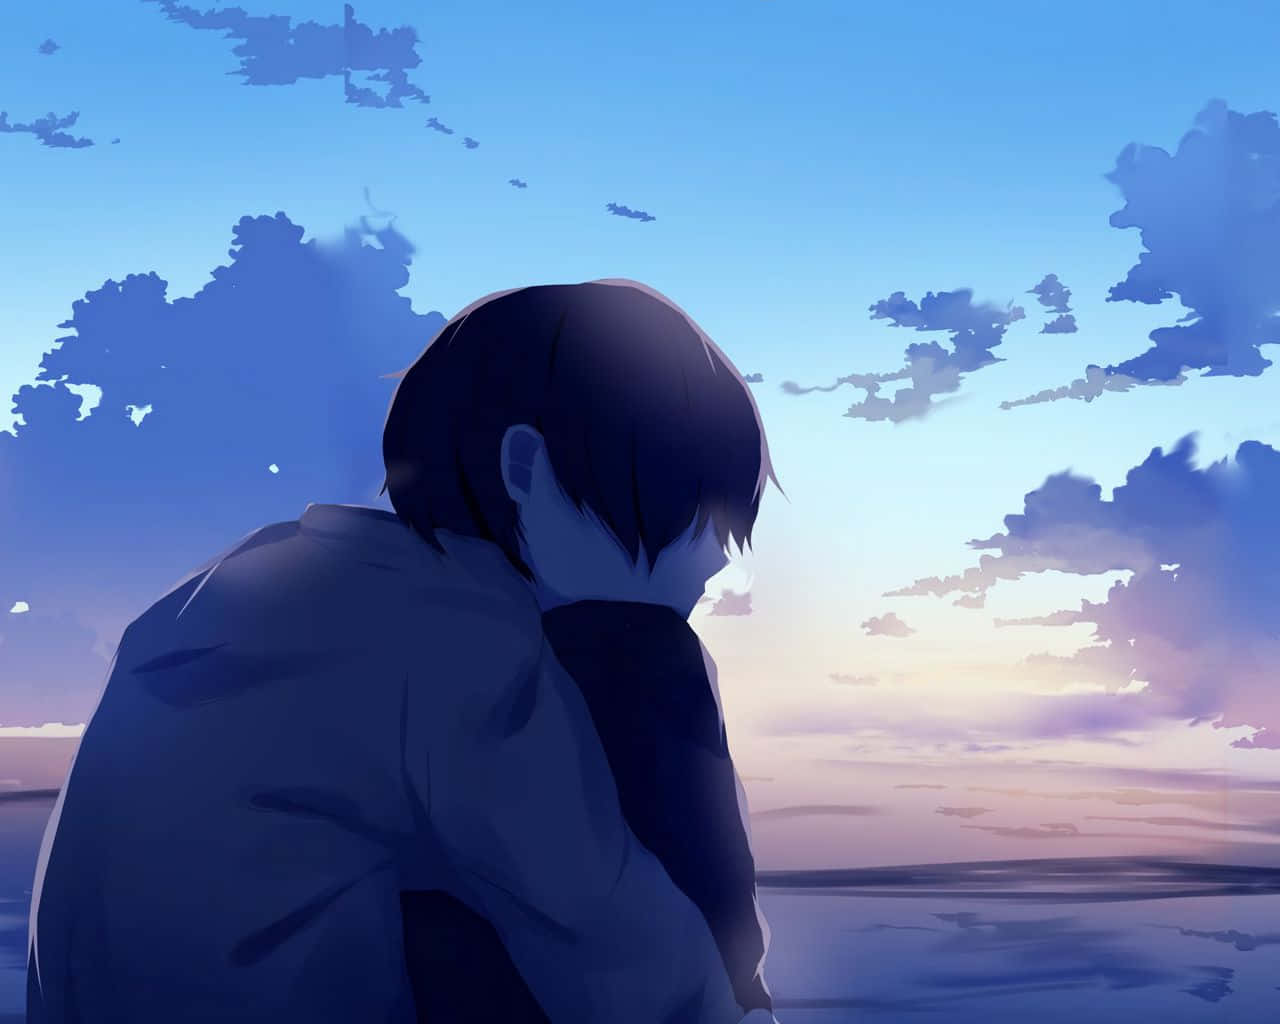 Unpersonaje De Anime Triste Y Oscuro Con Una Carga Emocional Muy Intensa. Fondo de pantalla